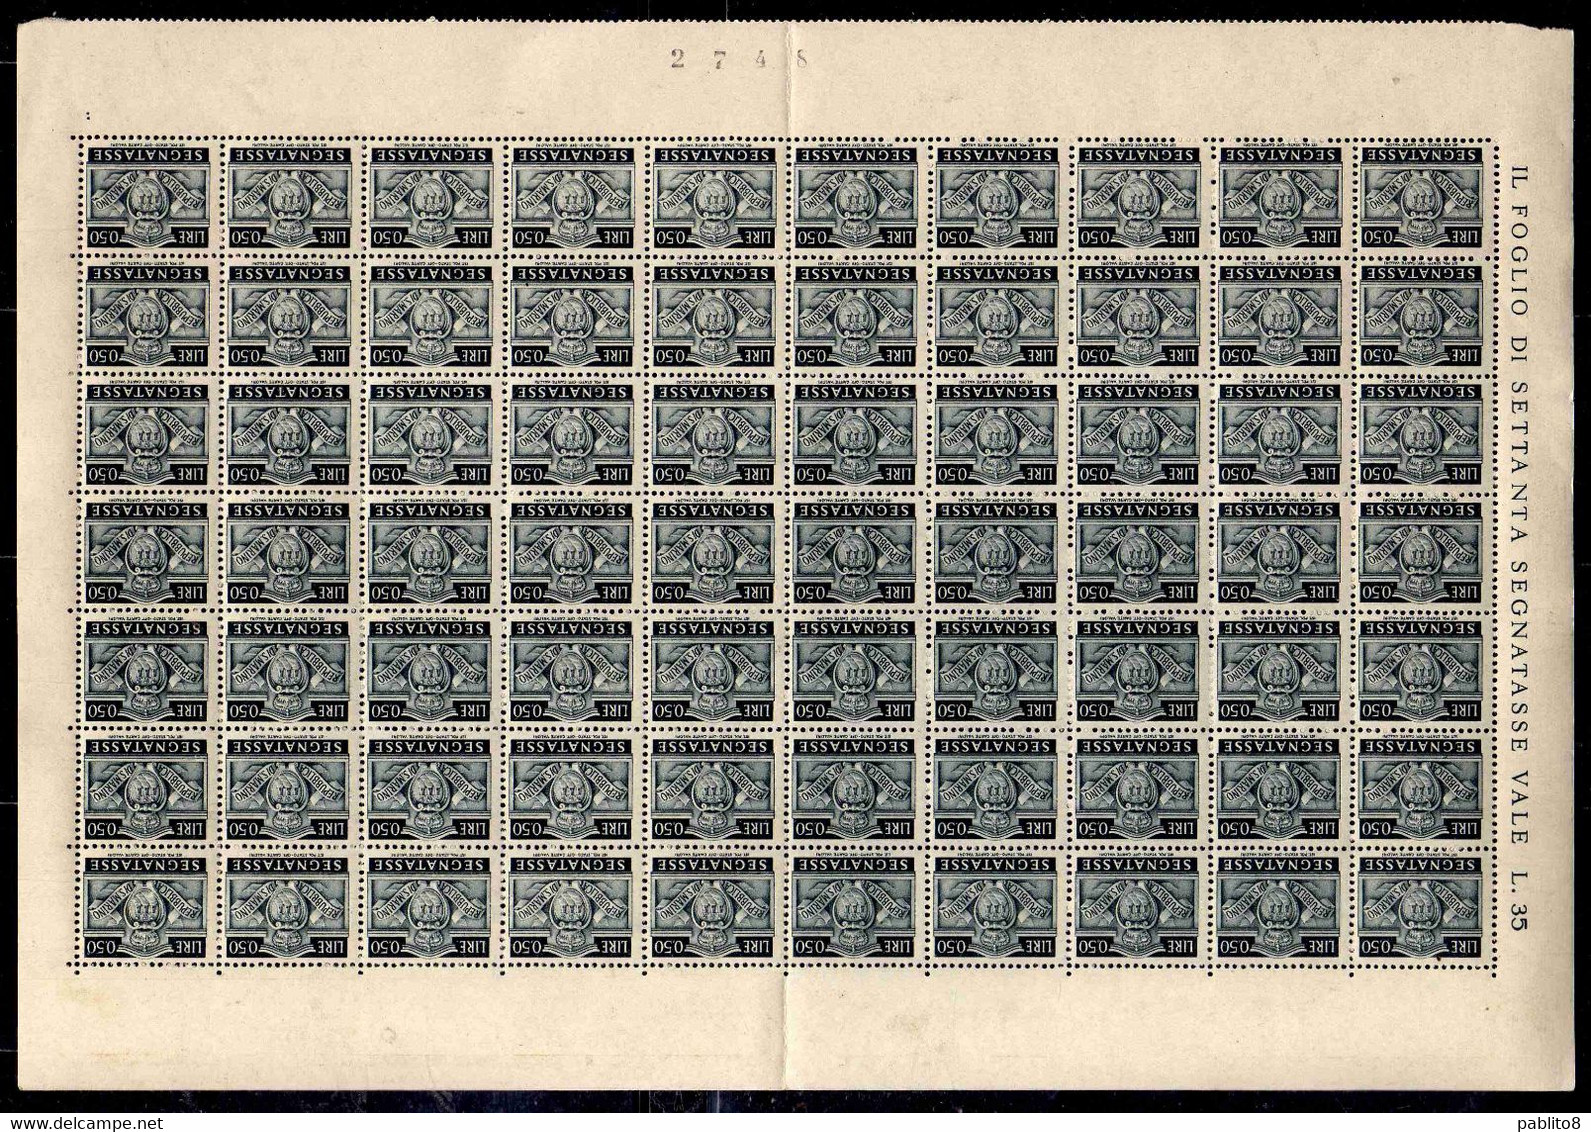 REPUBBLICA DI SAN MARINO 1945 SEGNATASSE POSTAGE DUE TASSE TAXE CENT. 50c  (0,50) FOGLIO DI 70 SHEET MNH - Postage Due